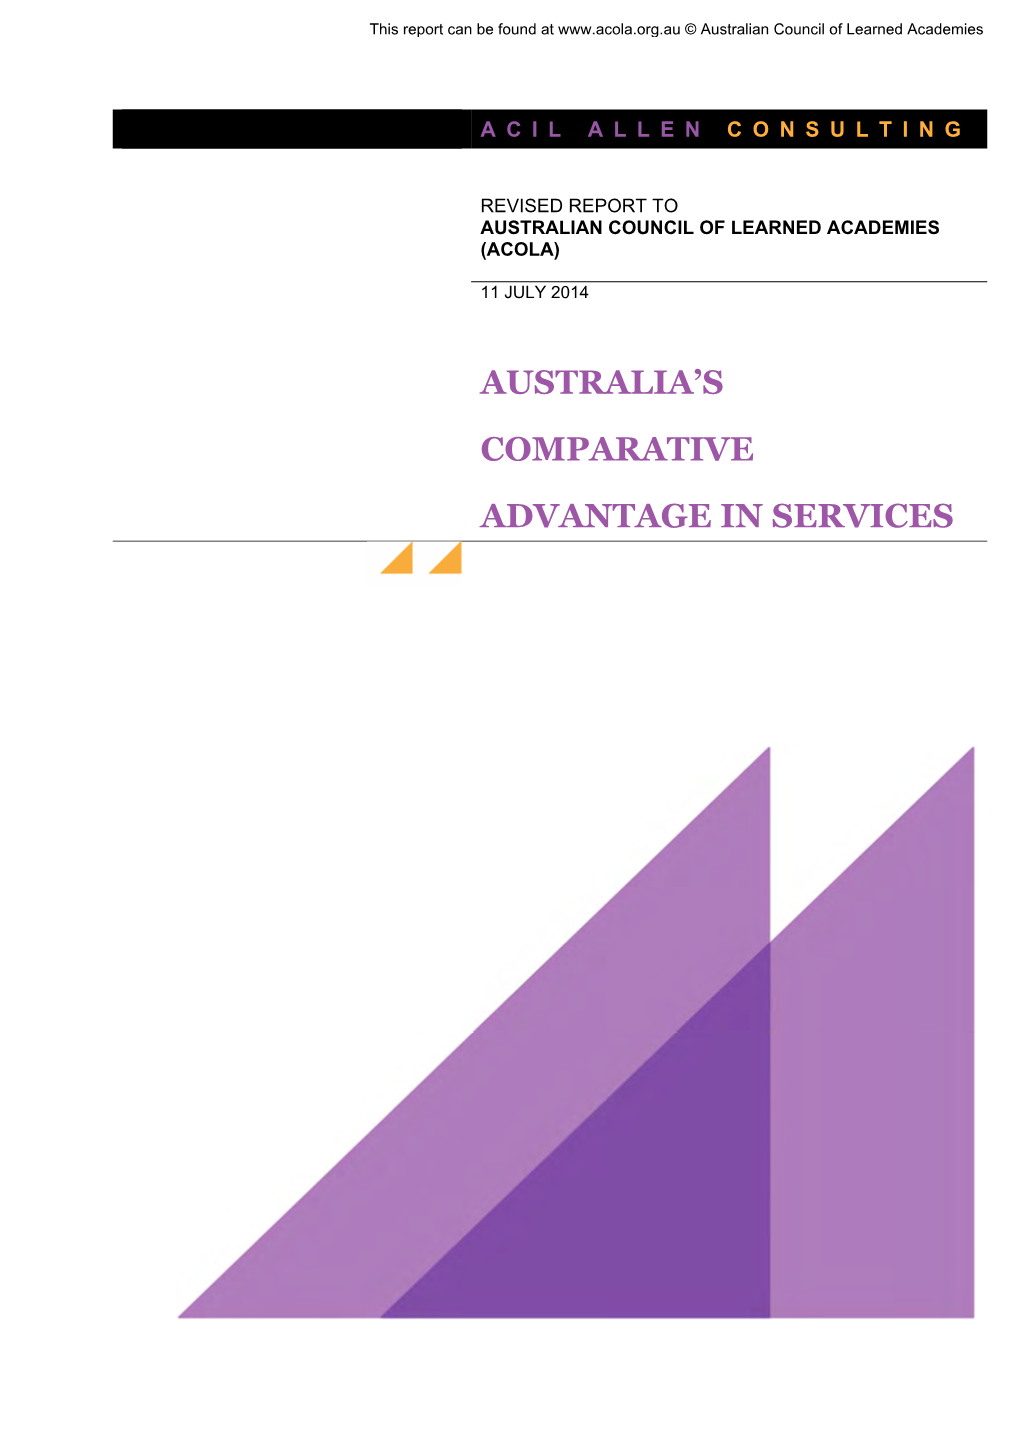 Australia's Comparative Advantage in Services